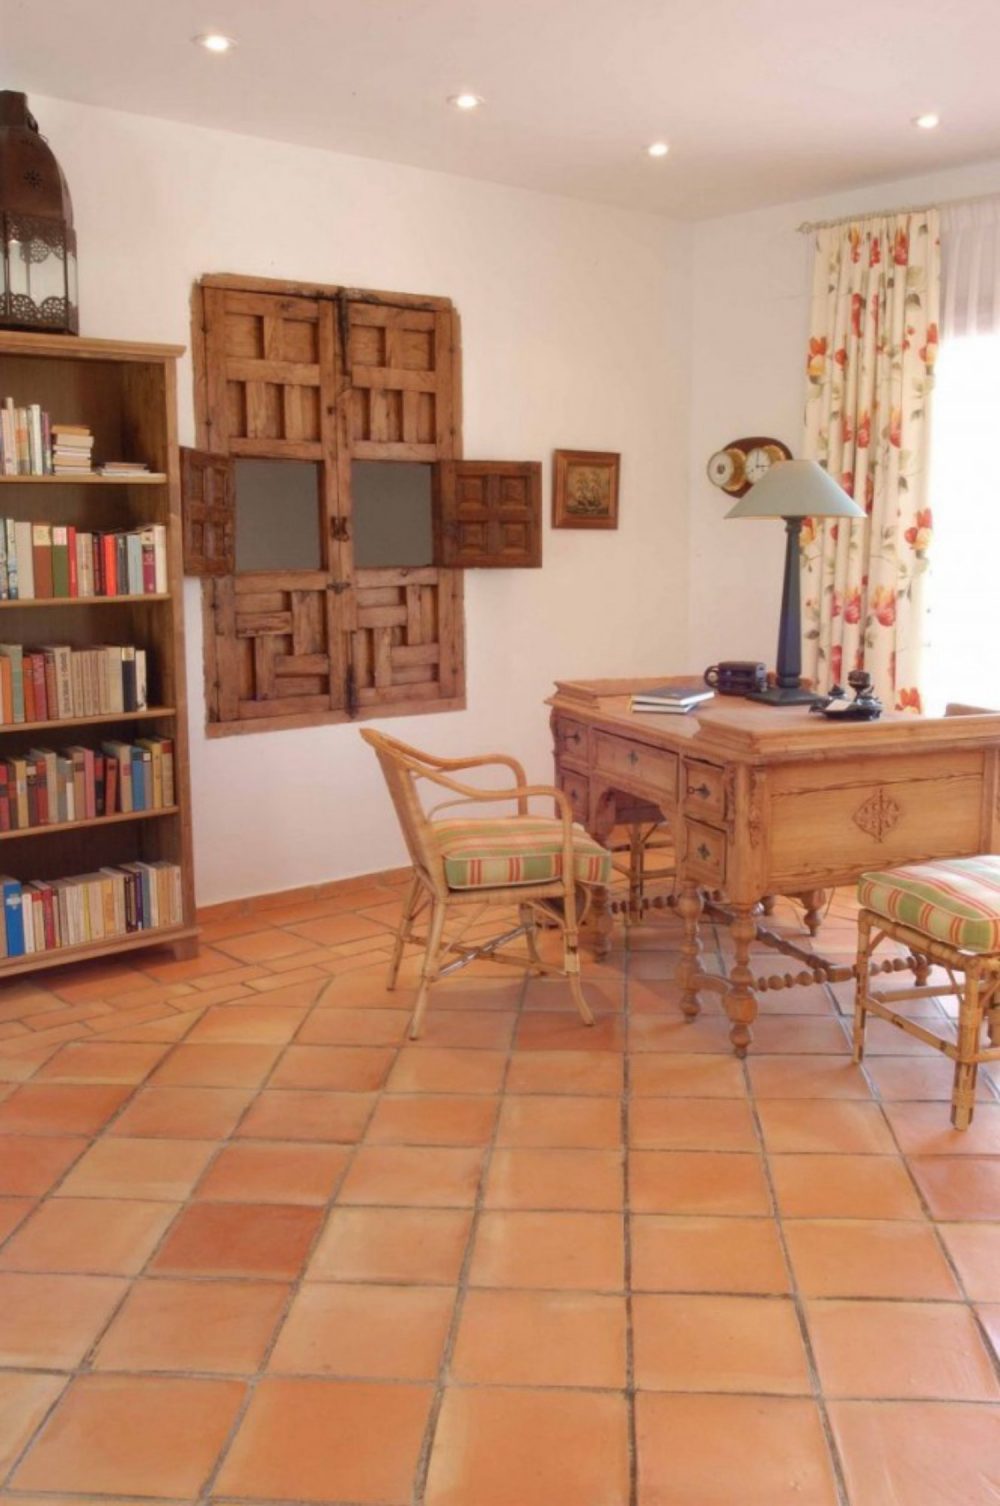 Spanish handmade terracotta floor tiles